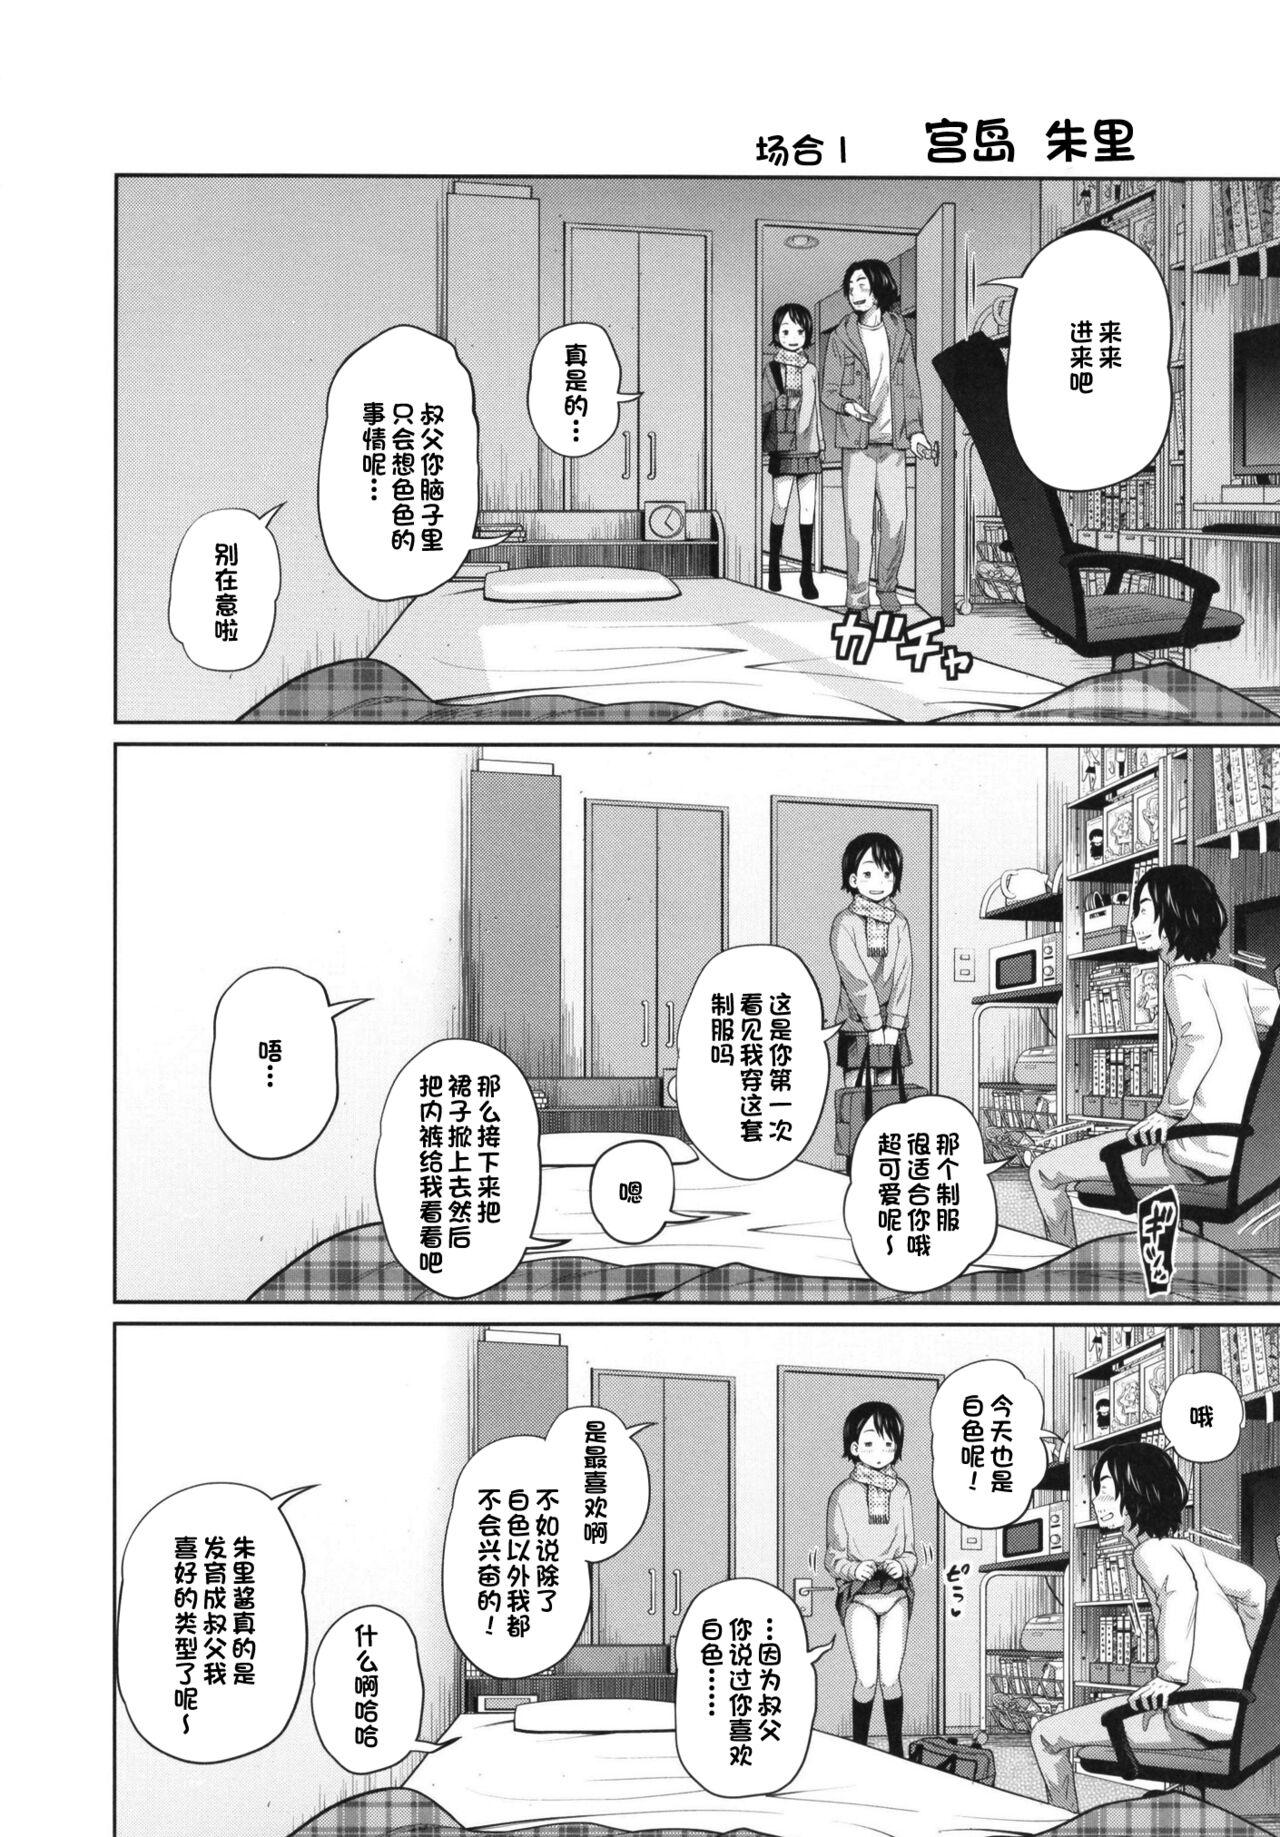 Com Kono Naka ni Kinshin Soukan Shiteiru Musume ga 3-nin Imasu #02 | 这些女孩当中正在近亲相奸的有3人 #2 Gapes Gaping Asshole - Page 4